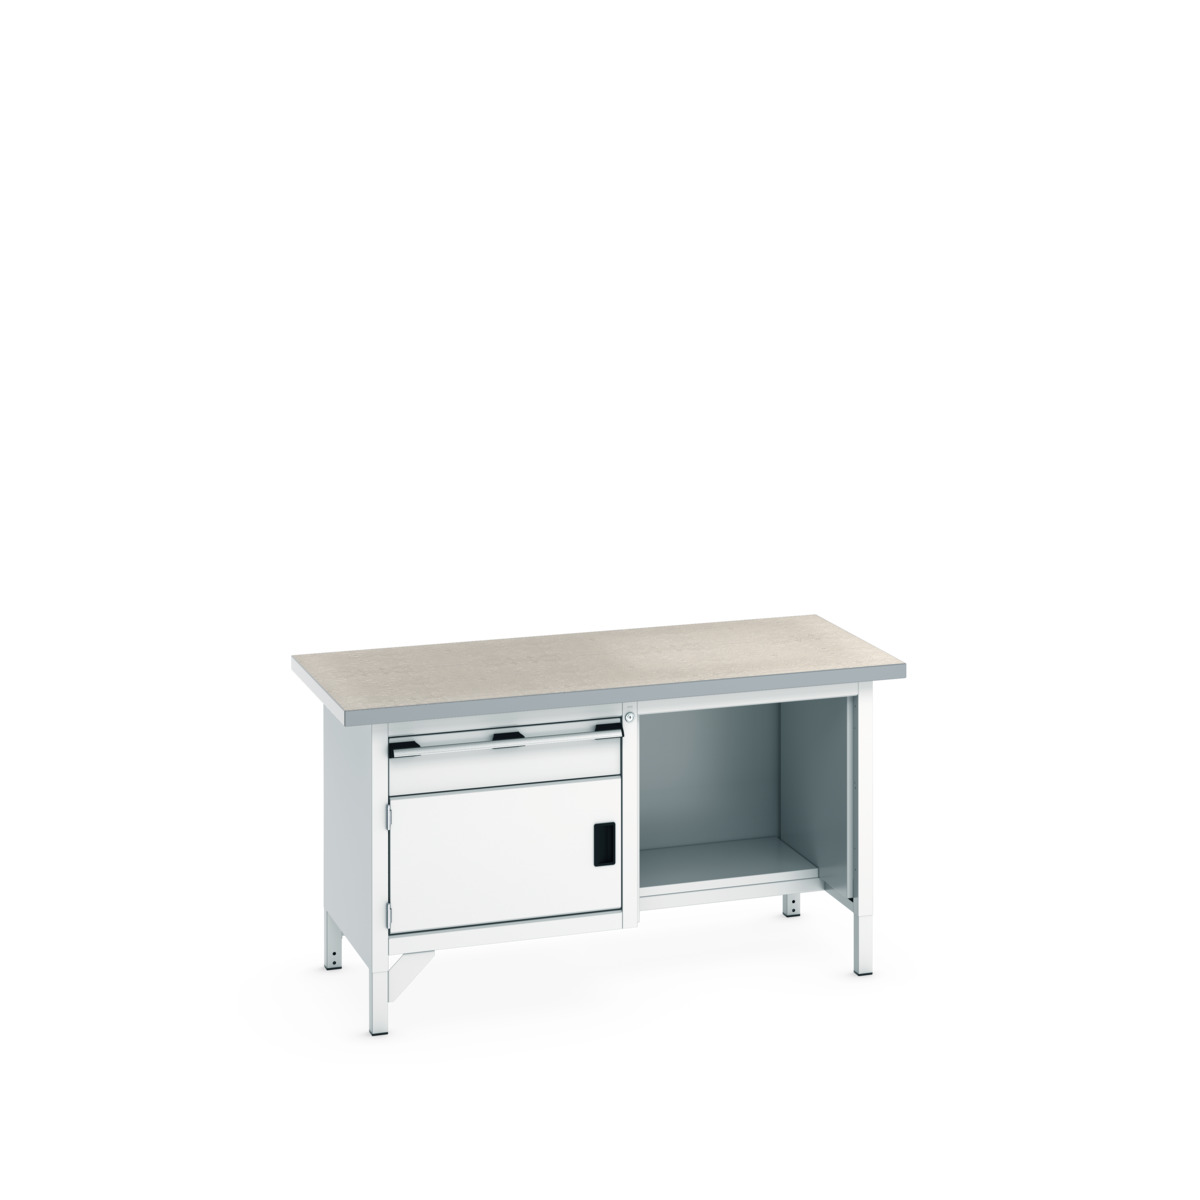 41002039.16V - cubio storage bench (lino)